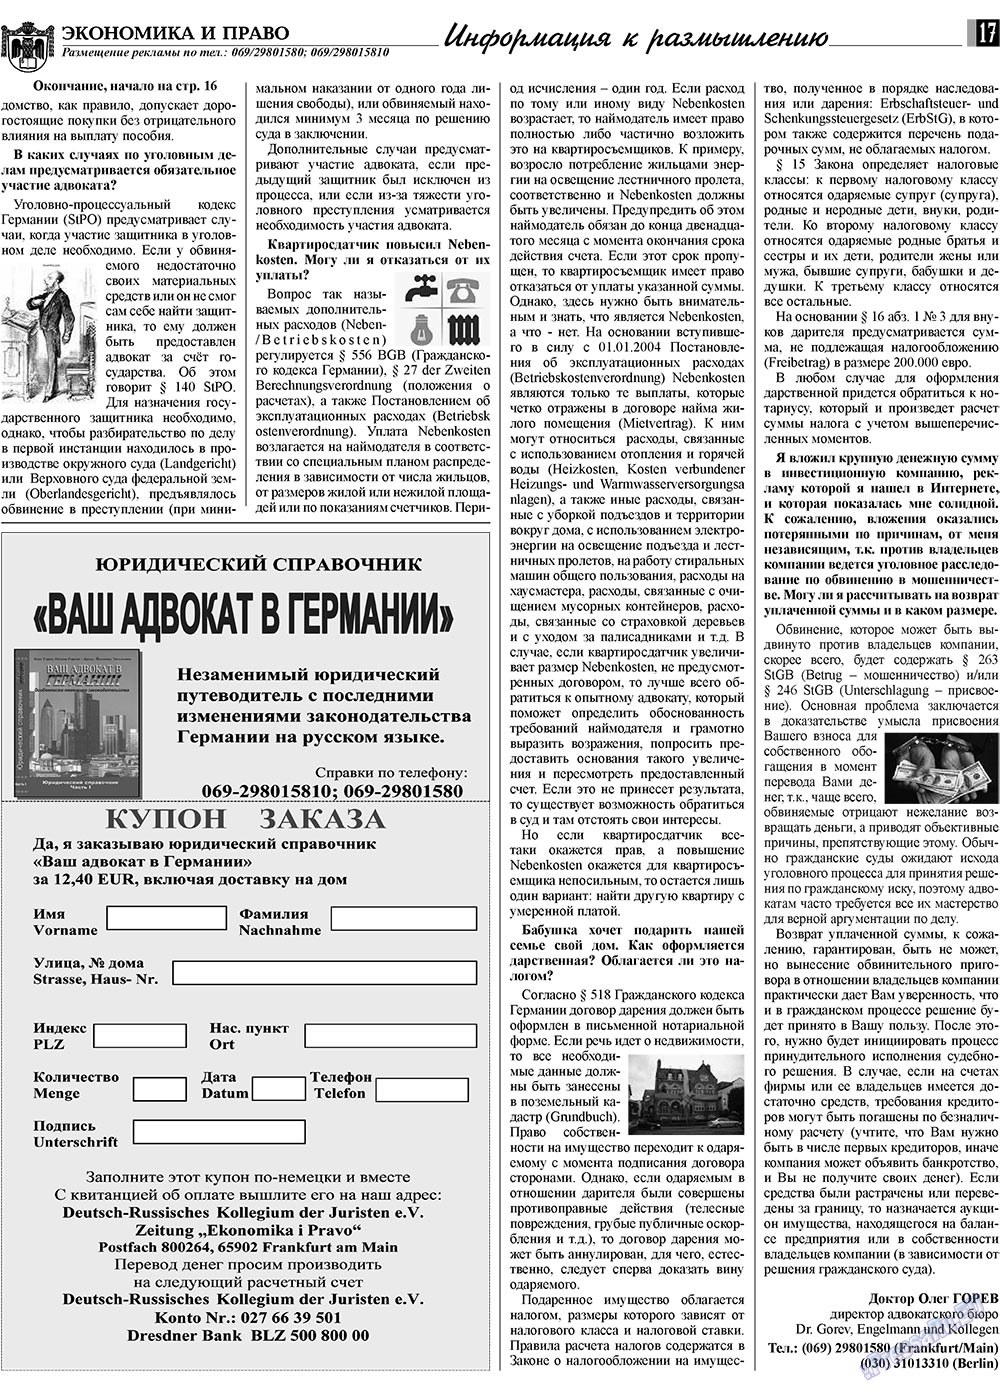 Экономика и право, газета. 2010 №1 стр.17